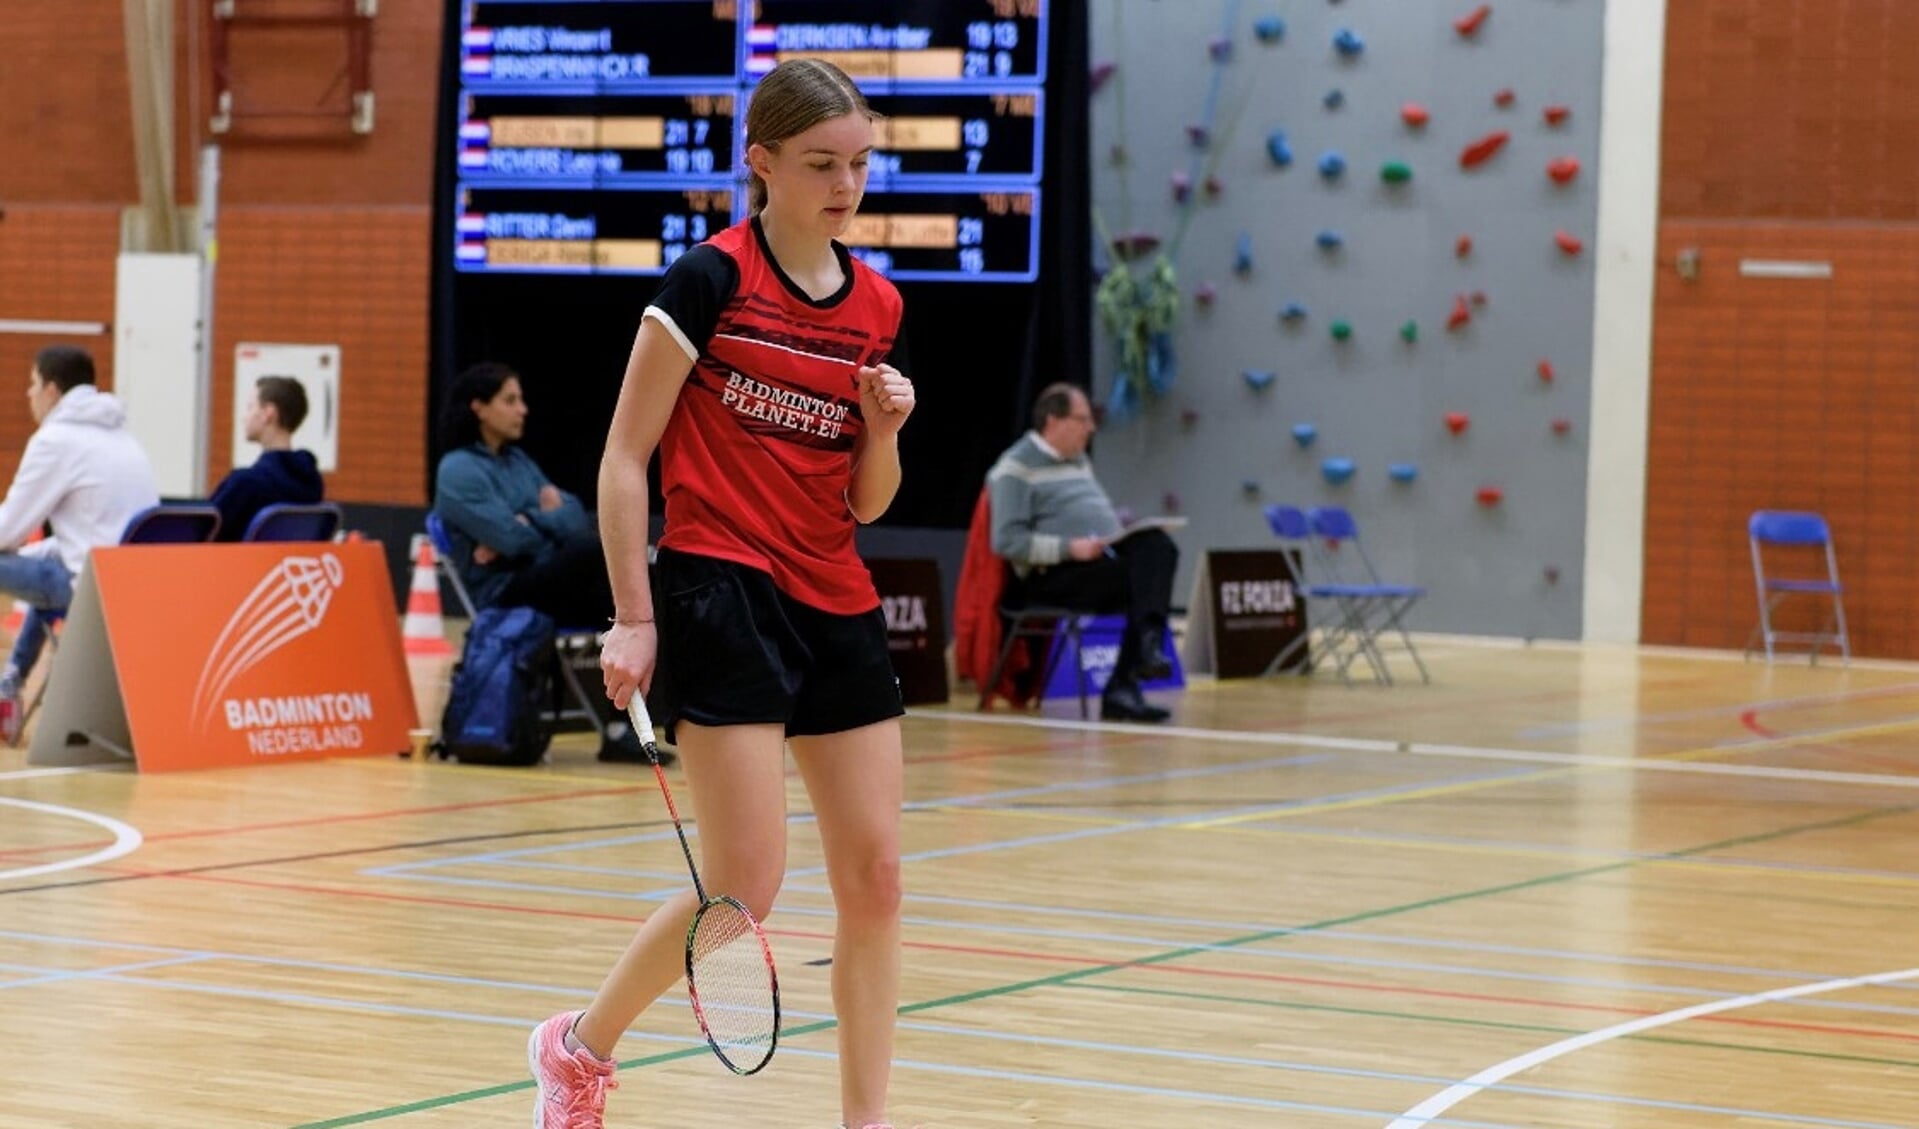 Veghels badmintontalent Amber Derksen in actie (Foto: Randy Berends Photography).